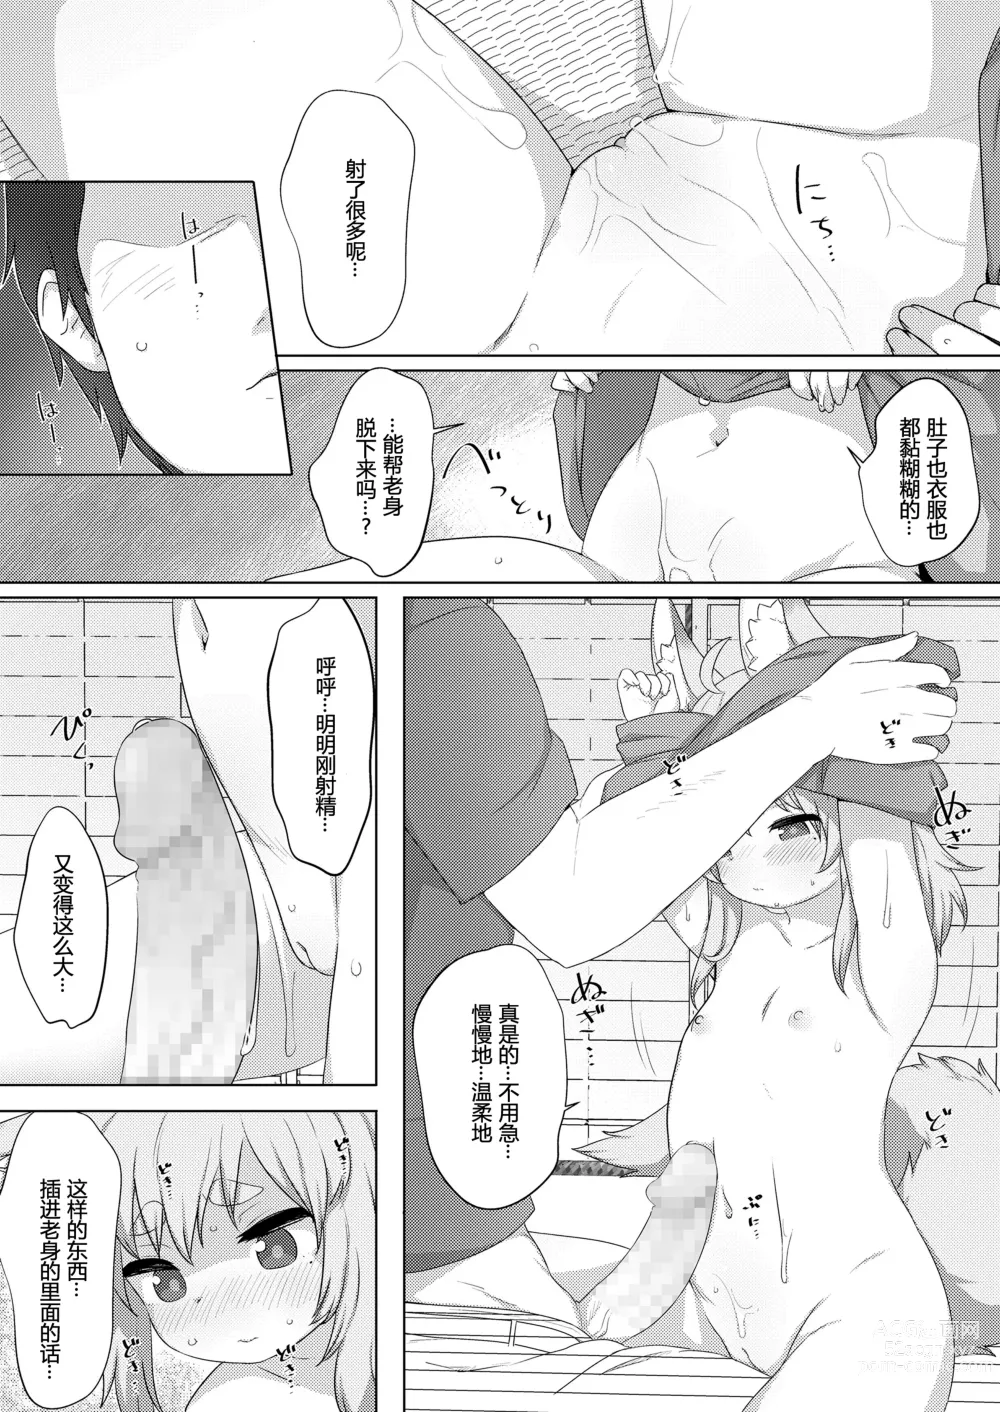 Page 7 of manga 本音·白音